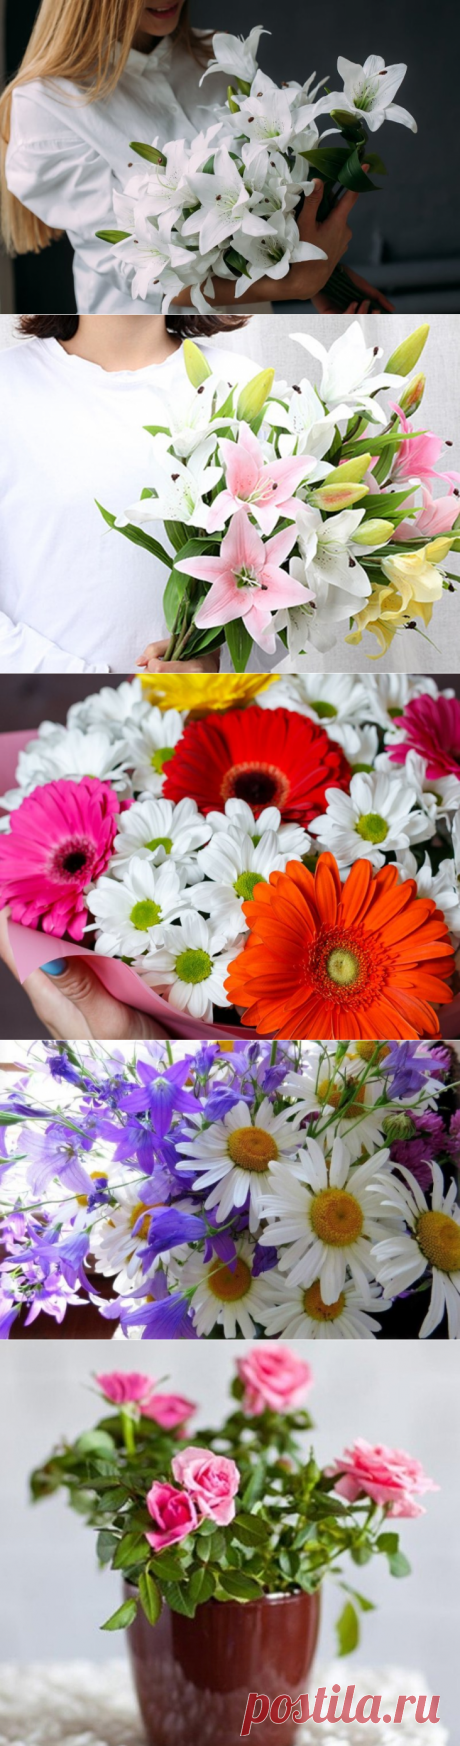 Какие виды цветов подарить подруге в день рождения на 16 лет:
Цветы розы, лилии или смешанный букет, полевые (фото) какие из них подарить подруге на день рождения в 16 лет: